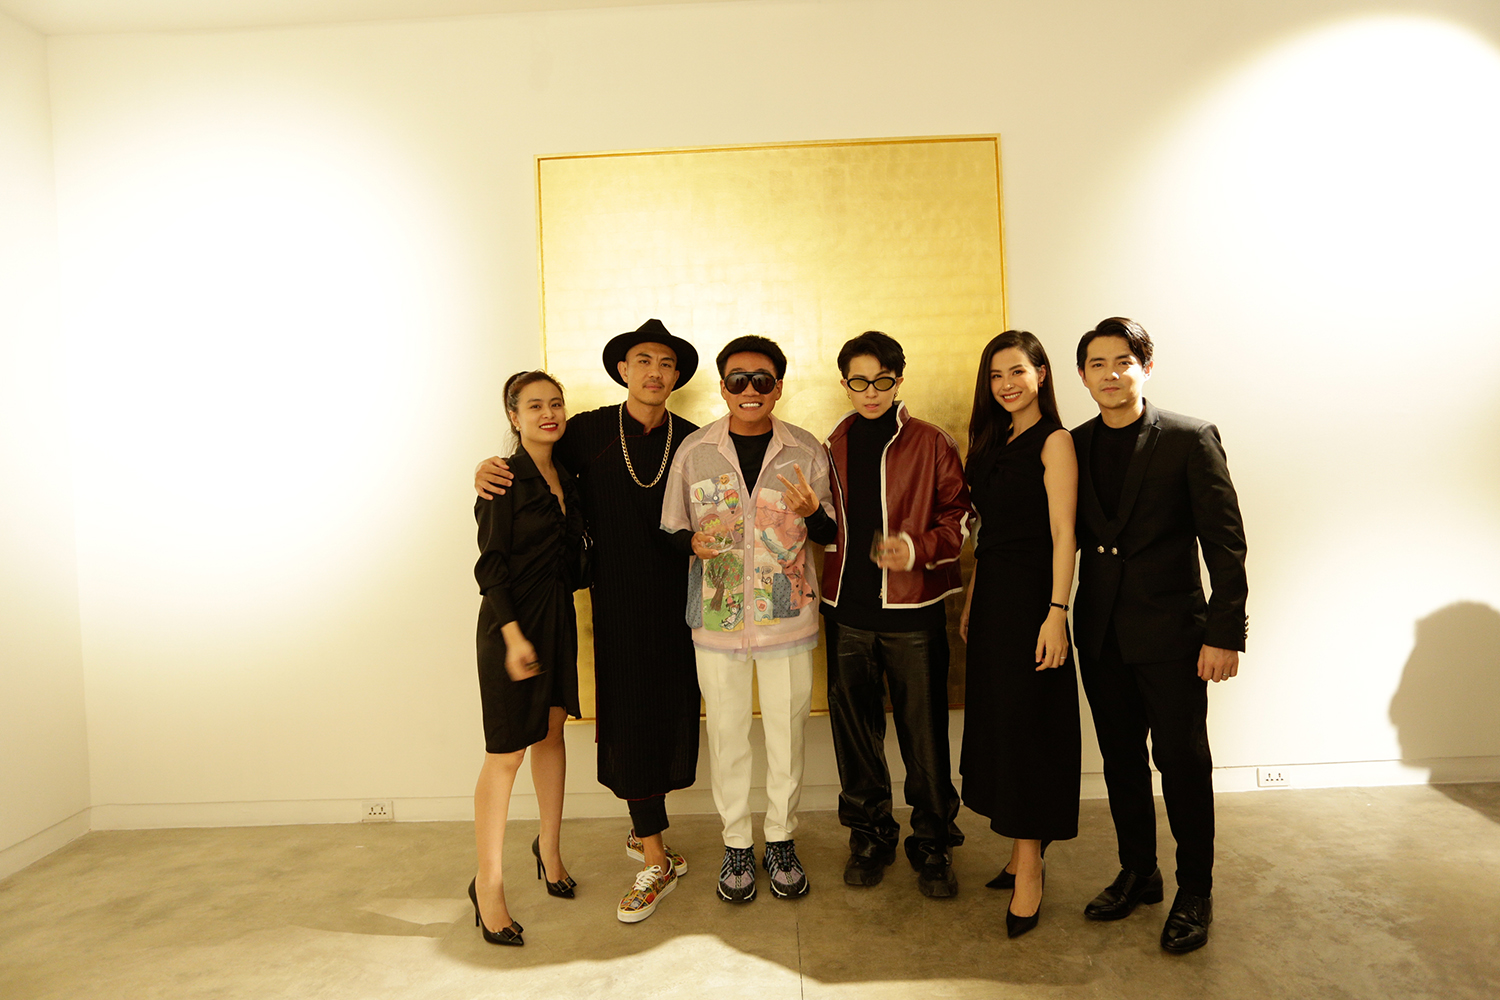 Ngoài Đông Nhi và Ông Cao Thắng, bộ đôi Gil Lê và Hoàng Thùy Linh cũng đến dự triển lãm của rapper Wowy. Trong một khung hình, hai nghệ sĩ không đứng cùng nhau mà mỗi người một hướng.